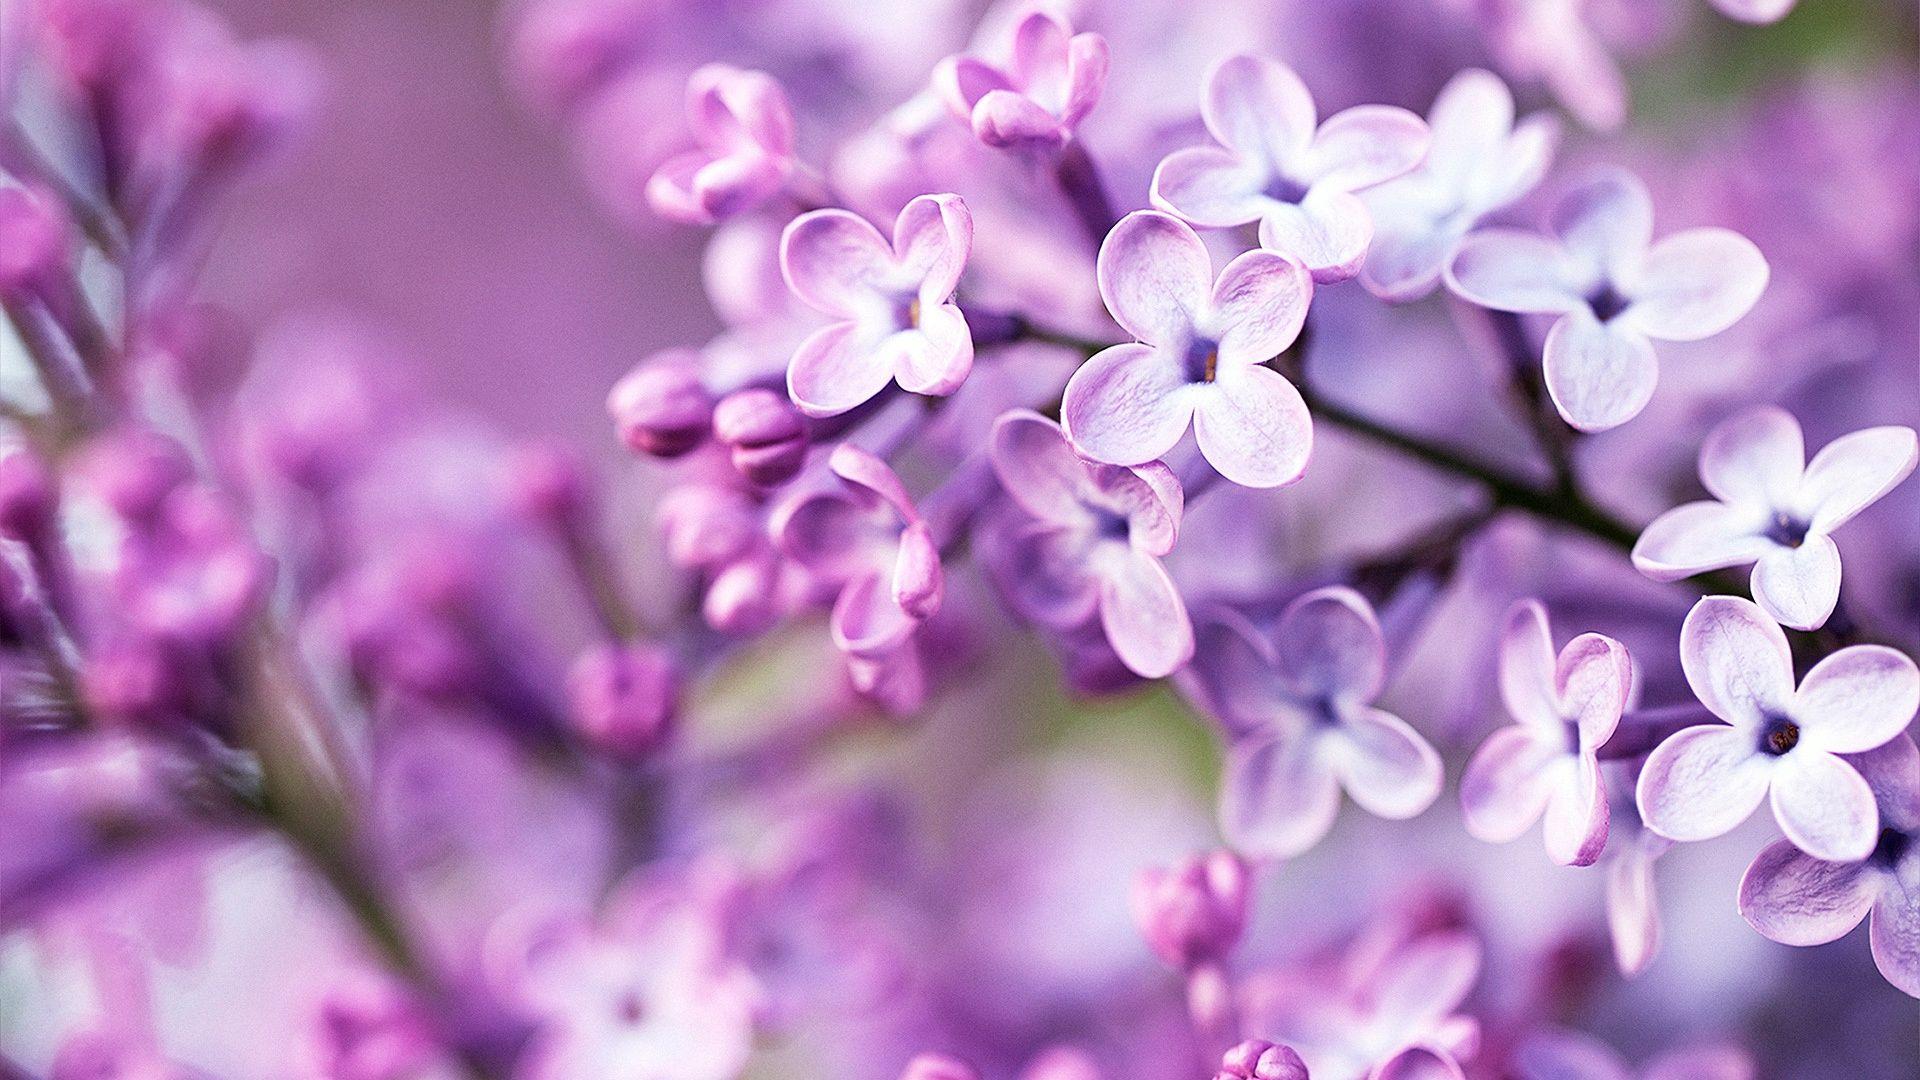 1920x1080 habrumalas: Purple Flowers Tumblr Image